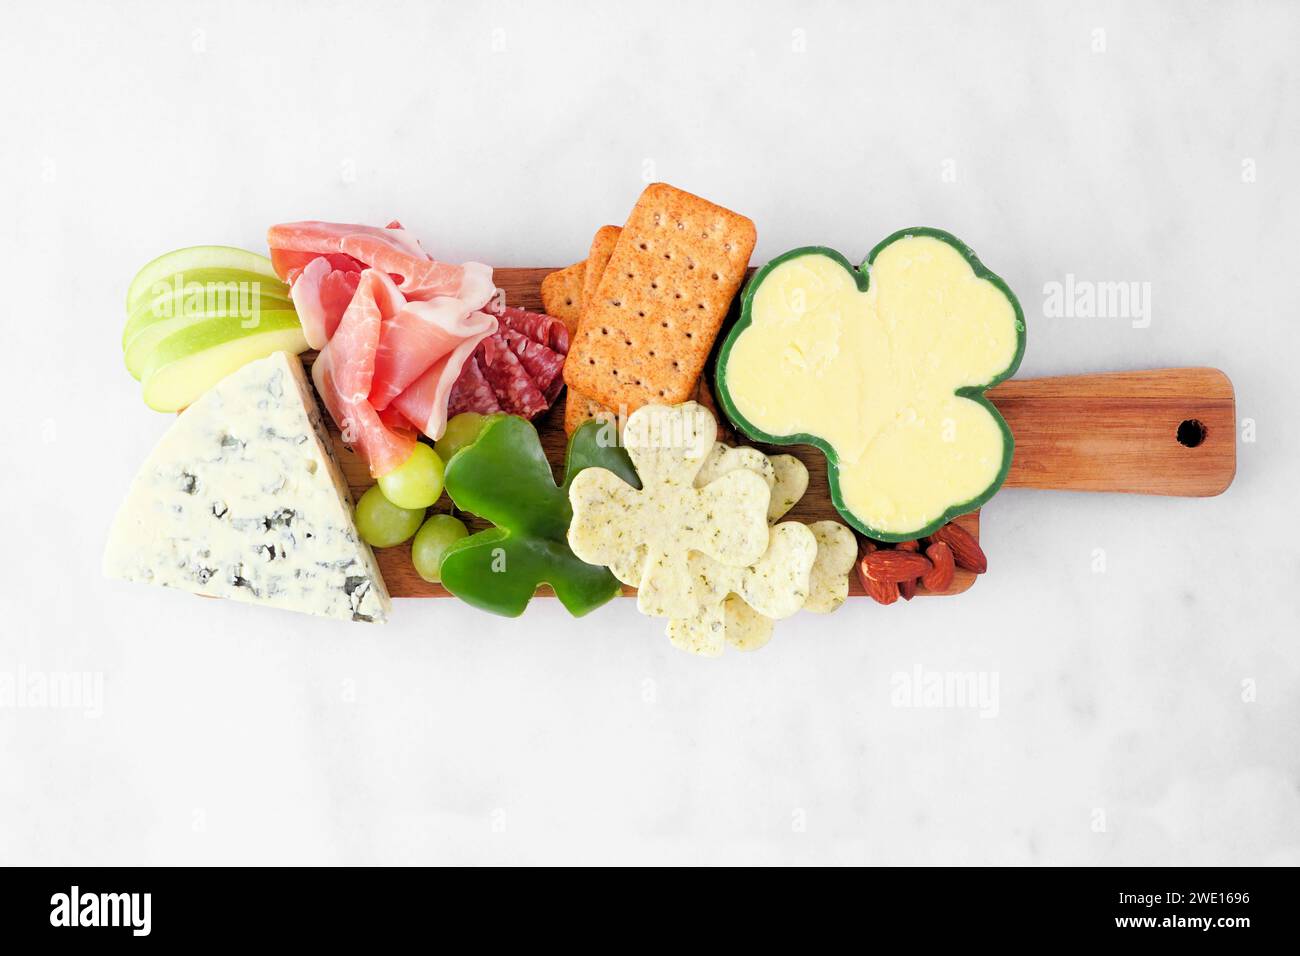 Charcuterie-Tafel mit dem Thema St. Patricks Day vor weißem Marmorhintergrund. Auswahl an Käse-, Fleisch-, Obst- und Gemüsevorspeisen. Draufsicht. Stockfoto